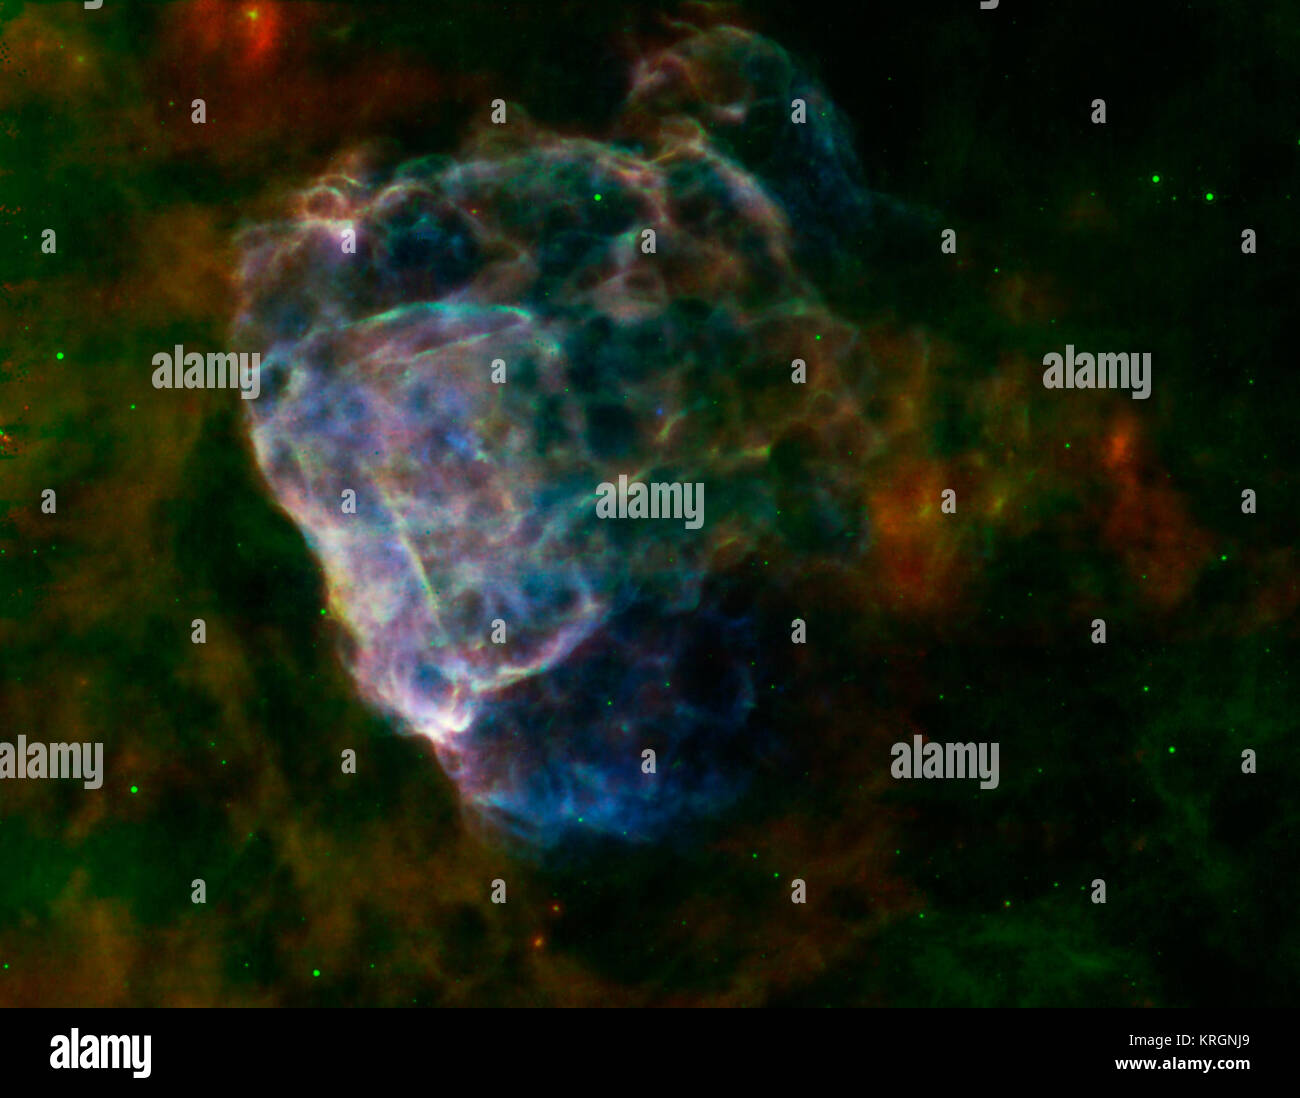 Die zerstörerischen Ergebnisse einer gewaltigen Supernova-Explosion offenbaren sich in einer feinen Mischung aus Infrarot- und Röntgenlicht, wie in diesem Bild von NASA's Spitzer Space Telescope und Chandra X-Ray Observatory gesehen und XMM der Europäischen Weltraumorganisation - Newton. Der schampus Cloud ist ein unregelmäßiger Schockwelle, die von einer Supernova, die vor 3.700 Jahren auf der Erde gezeugt worden wäre. Der überrest Selbst, genannt Puppis A, ist rund 7.000 Lichtjahre entfernt, und die Druckwelle ist ca. 10 Lichtjahre über. Die Pastelltöne in diesem Bild zeigen, dass die Infrarot- und X-ray Strukturen jedes anderen Trace Stockfoto